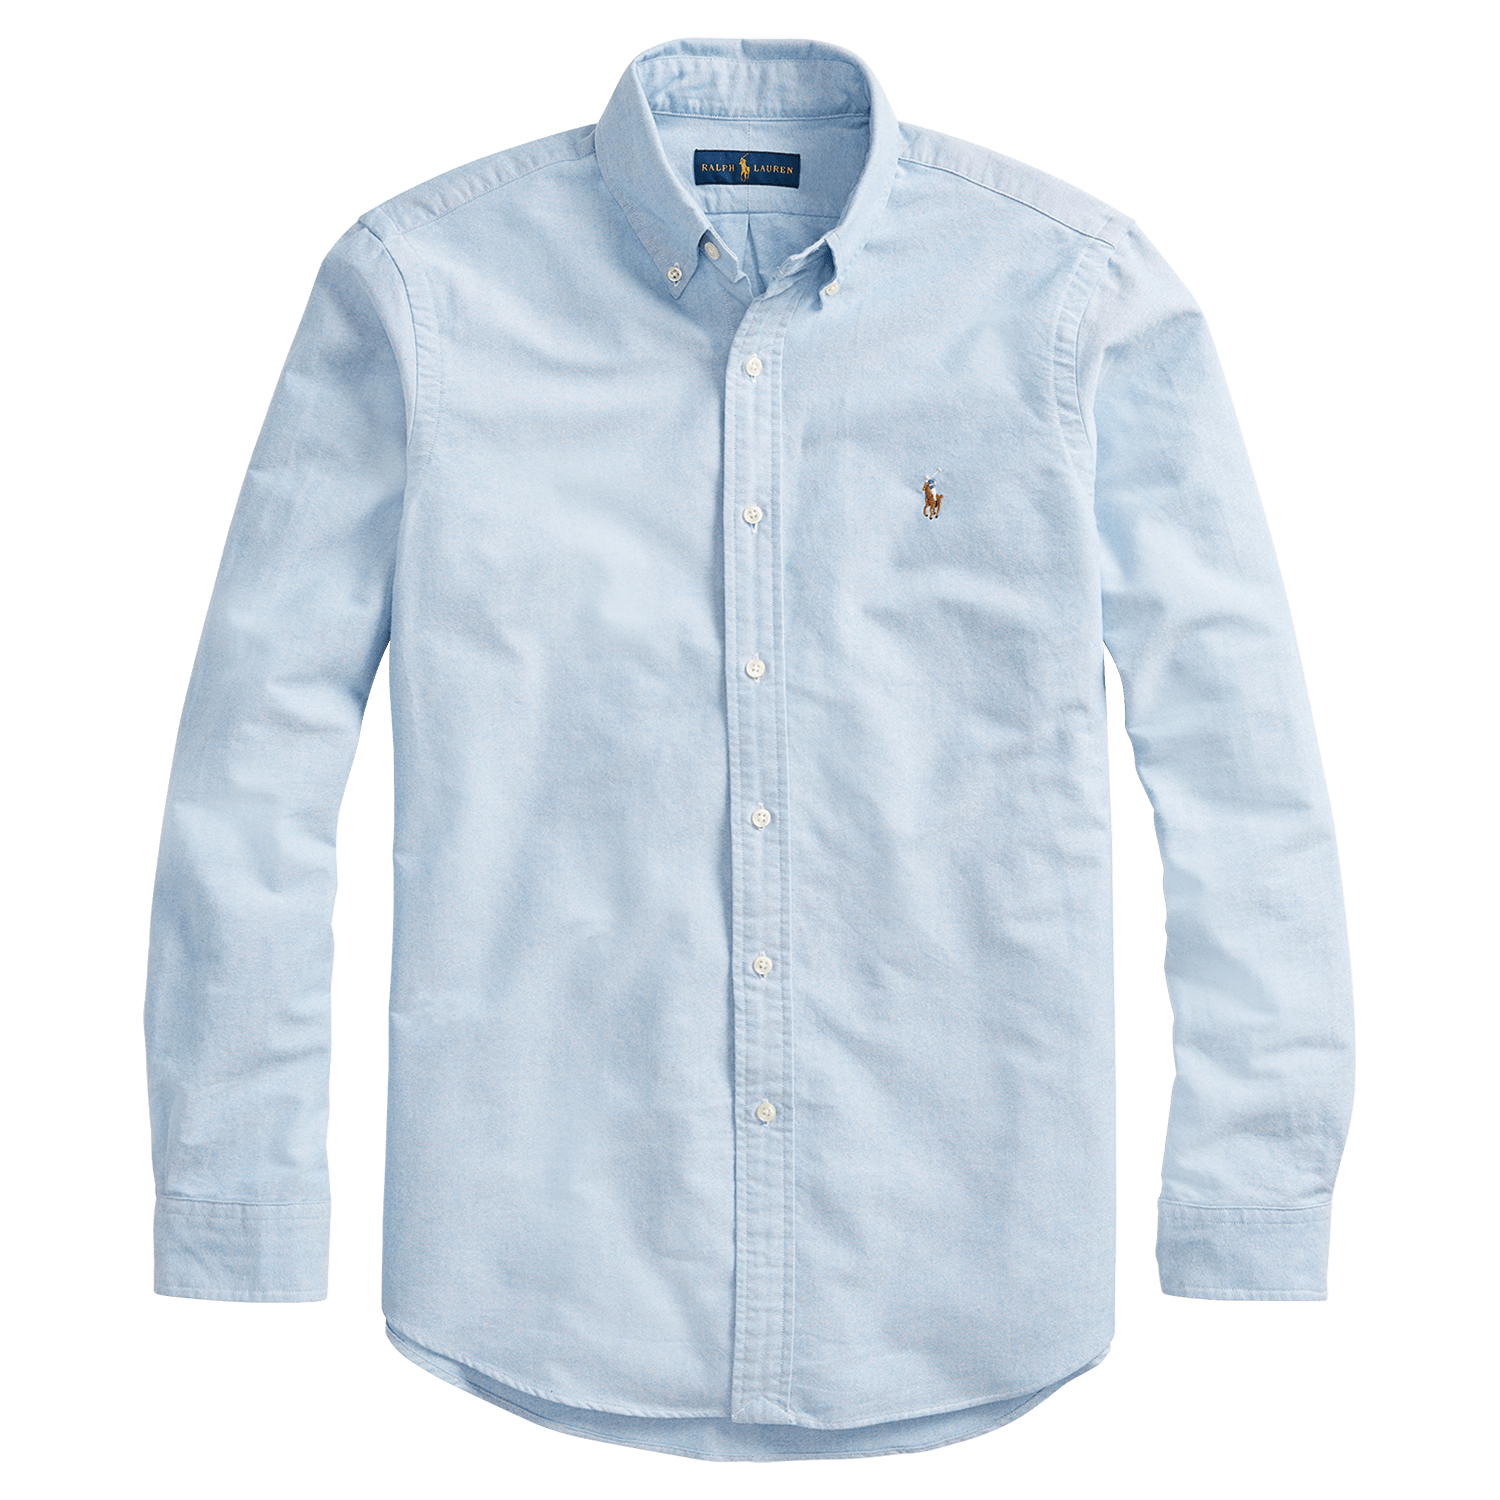 Polo Ralph Lauren Woven Shirts S / Blue Polo Ralph Lauren - Classic Fit Oxford Shirt